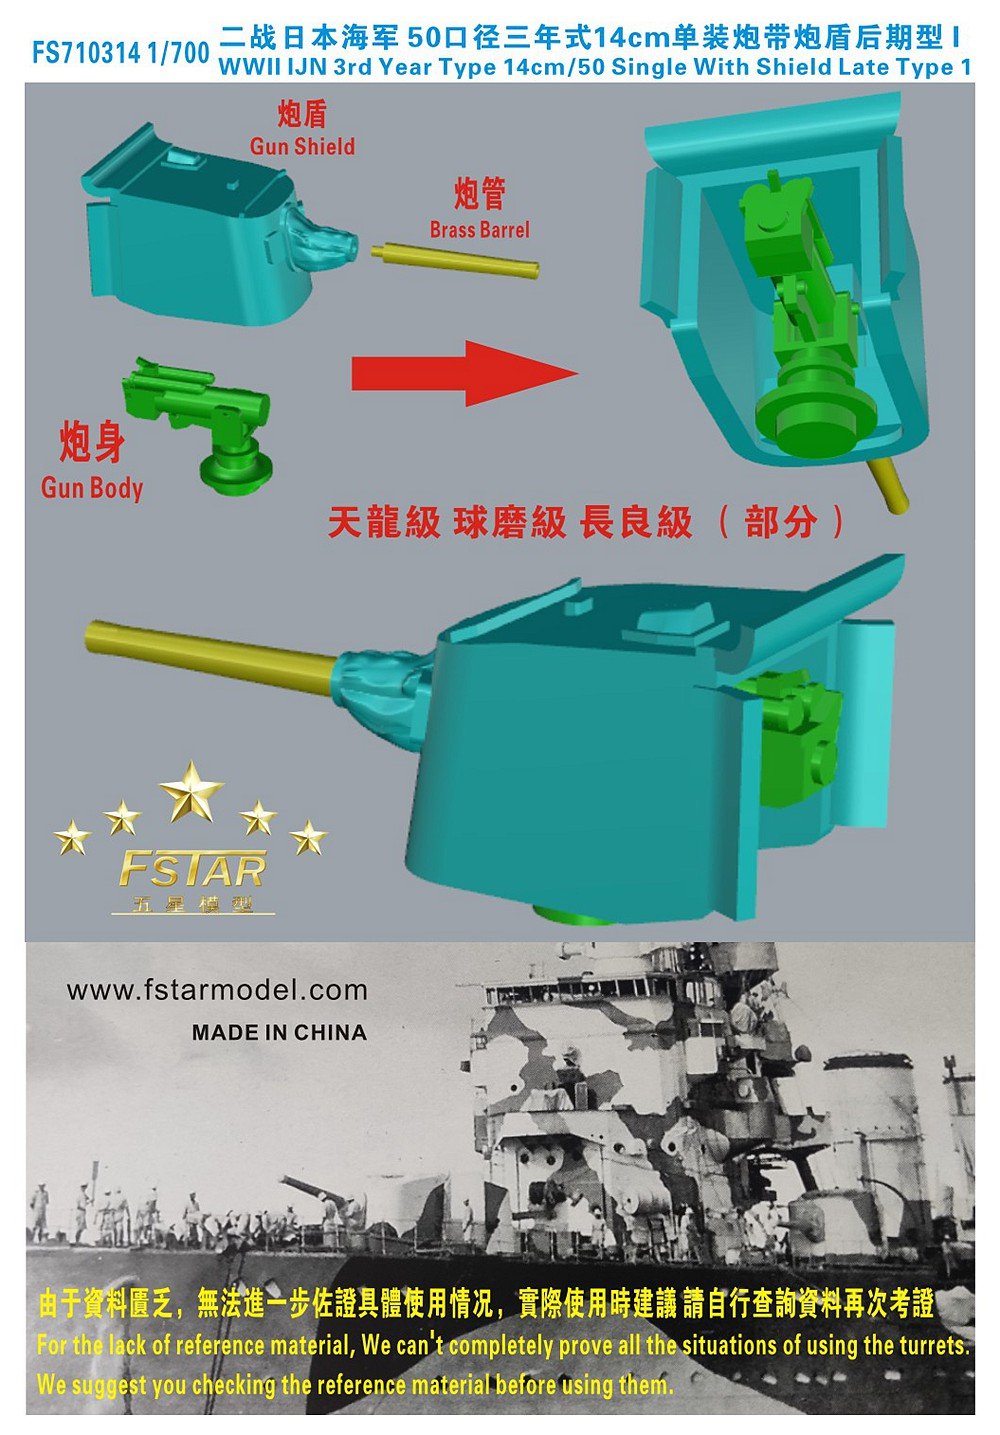 1/700 二战日本海军50口径三年式14cm单装炮带炮盾后期型(7台)3D打印 - 点击图像关闭